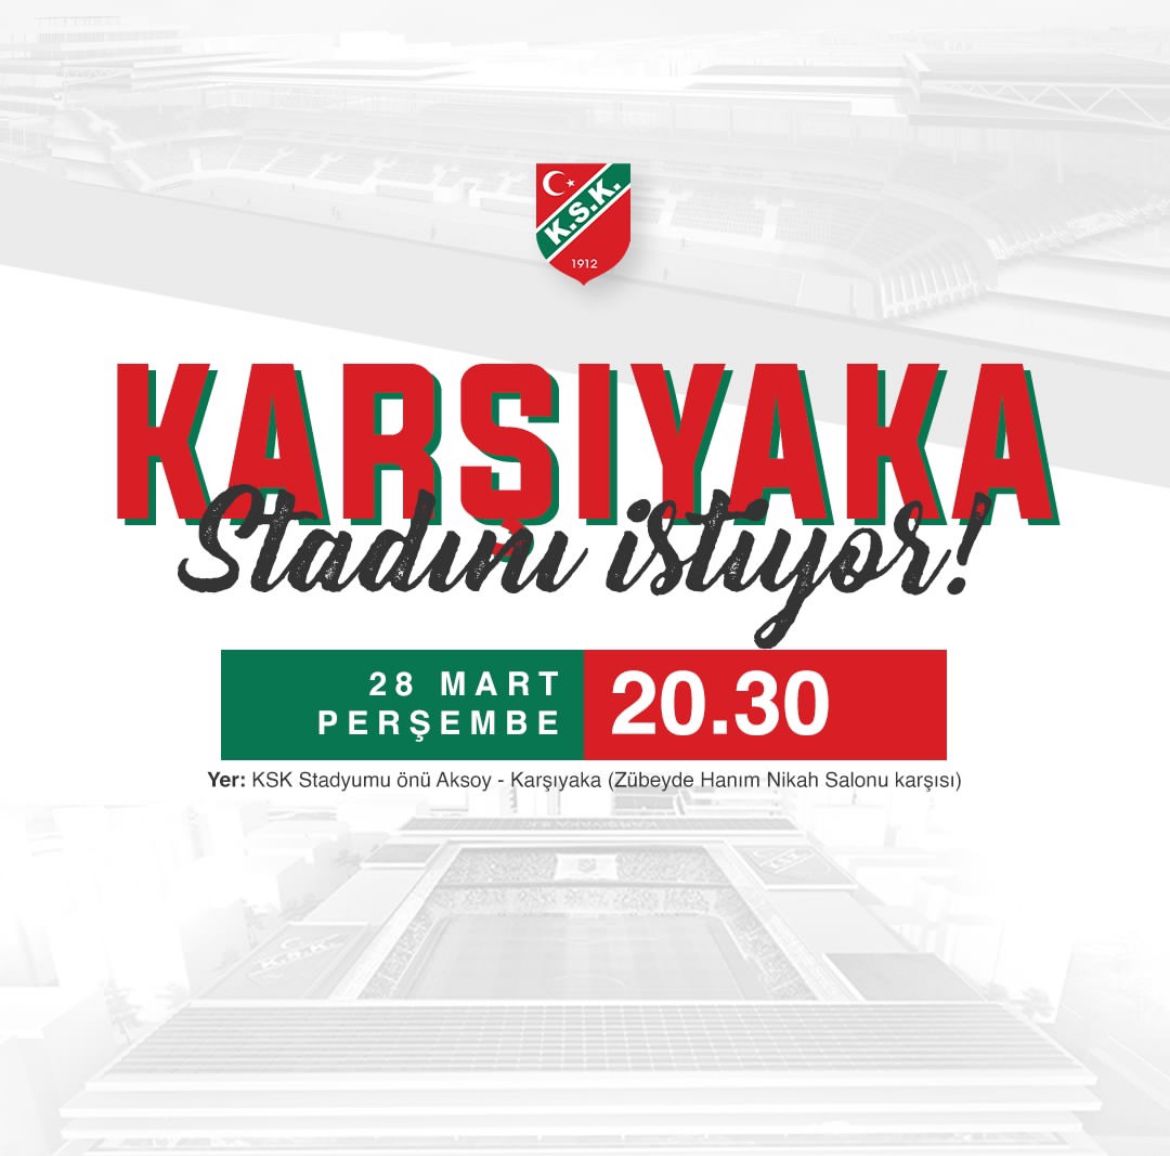 Karşıyaka Stadını İstiyor! Perşembe 20.30 Karşıyaka Stadı Önü